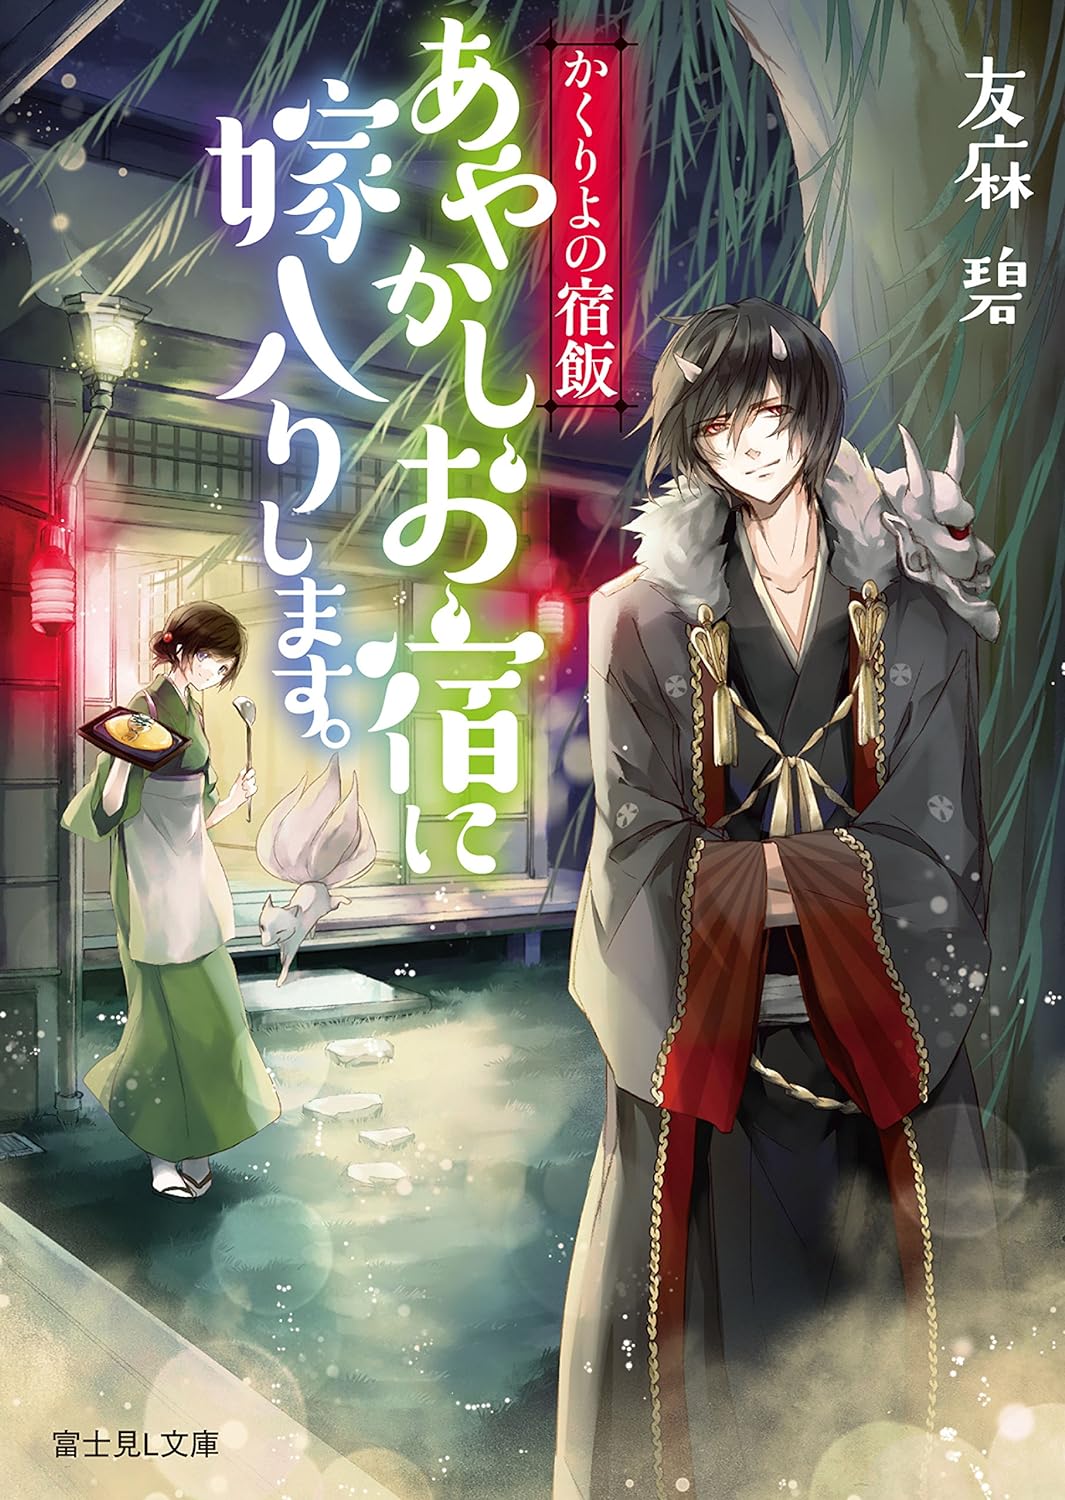 Kakuriyo no Yadomeshi Novel Cover 1